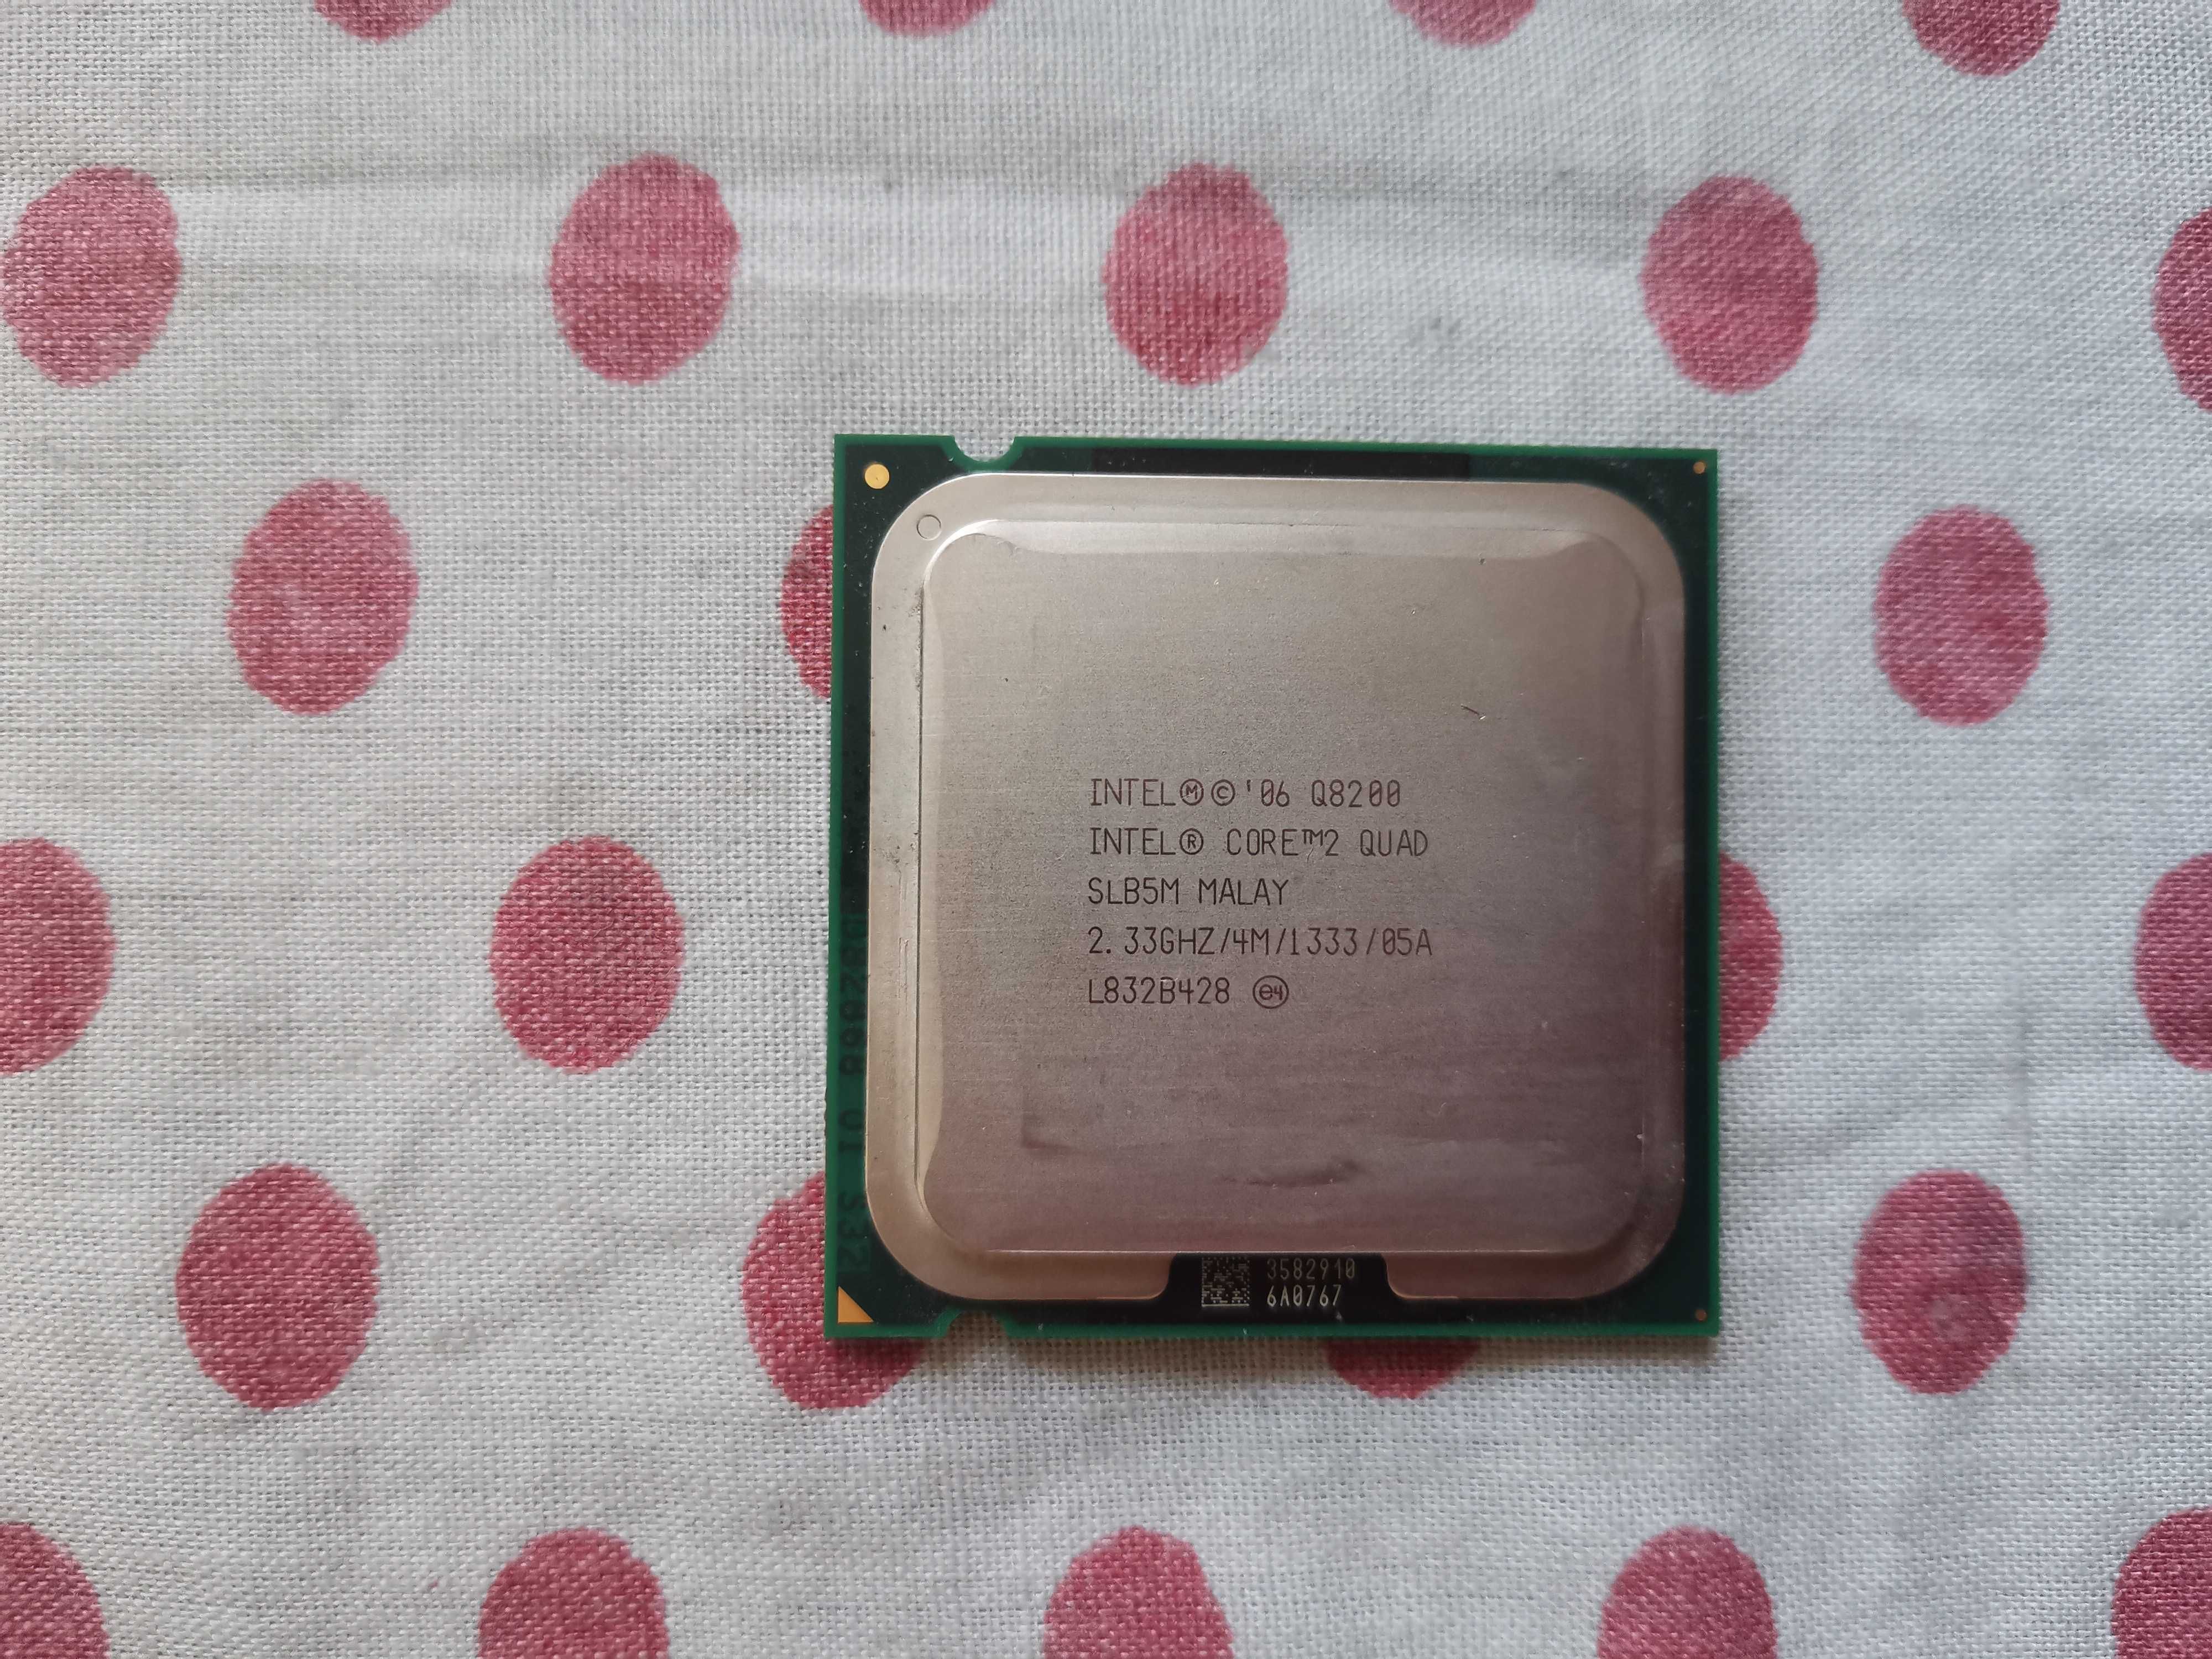 Procesor Intel Core 2 Quad Q8200 2,33GHz/4M/1333 FSB socket 775, Pasta